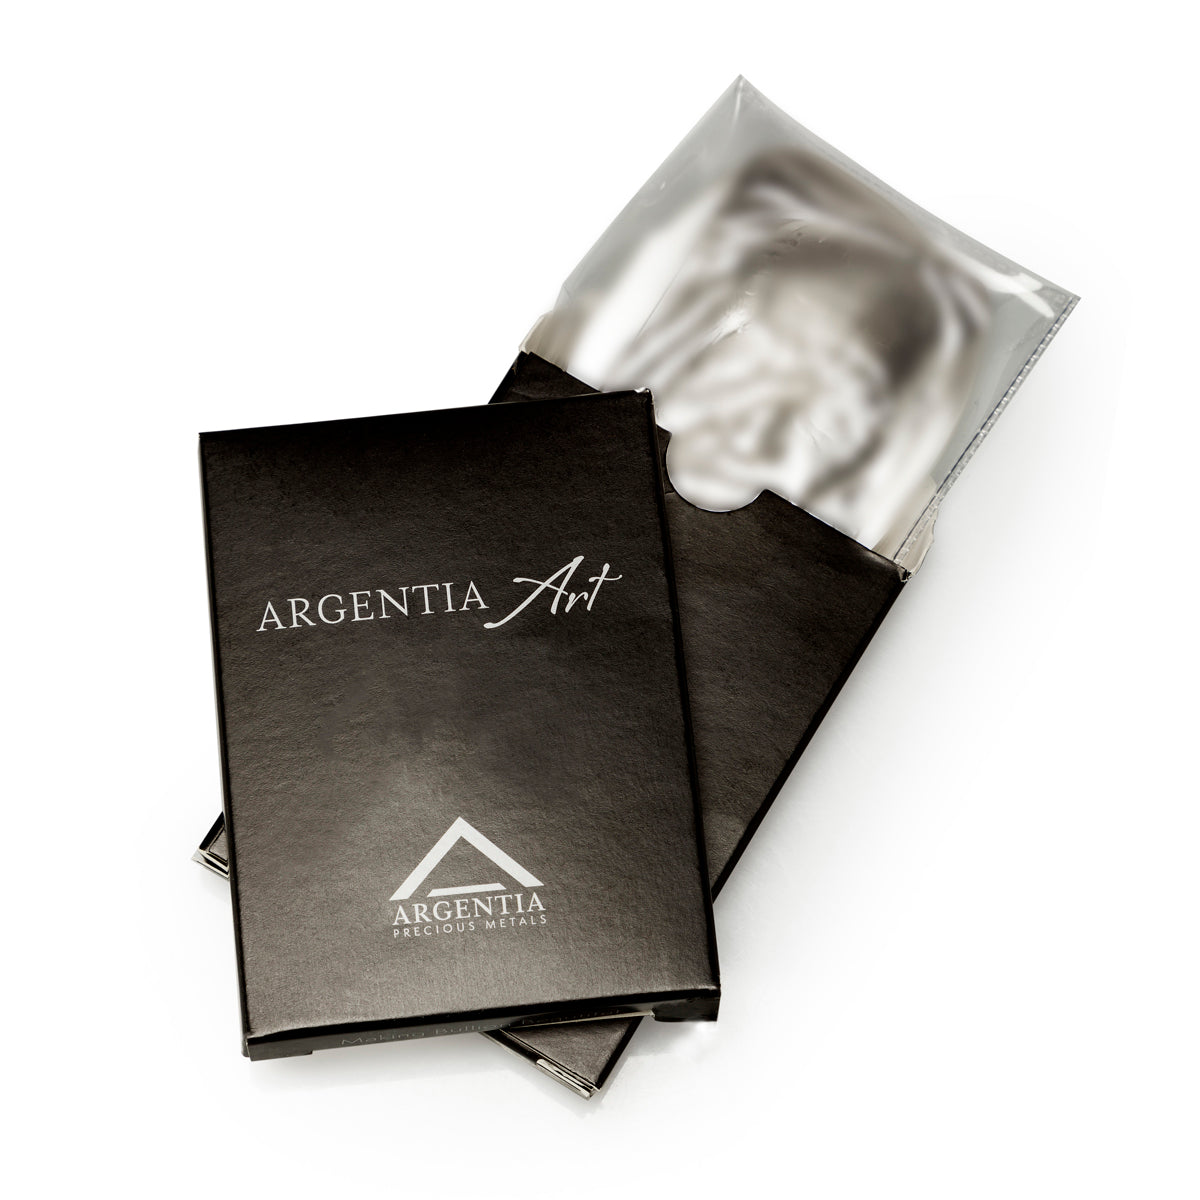 10 oz Silver Bar - Winged Unicorn - Argentia Mint - .9999 Ag